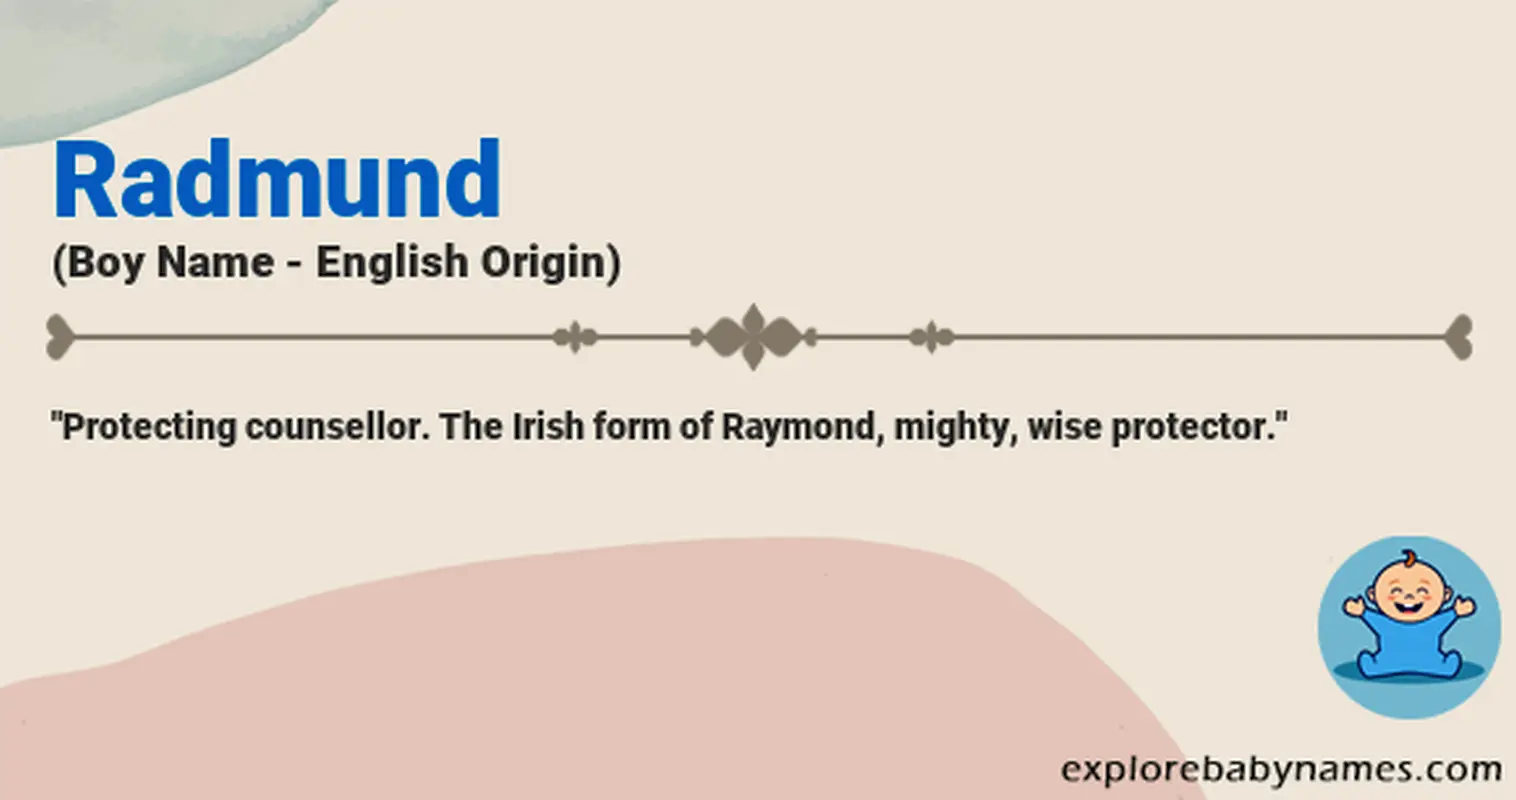 Meaning of Radmund